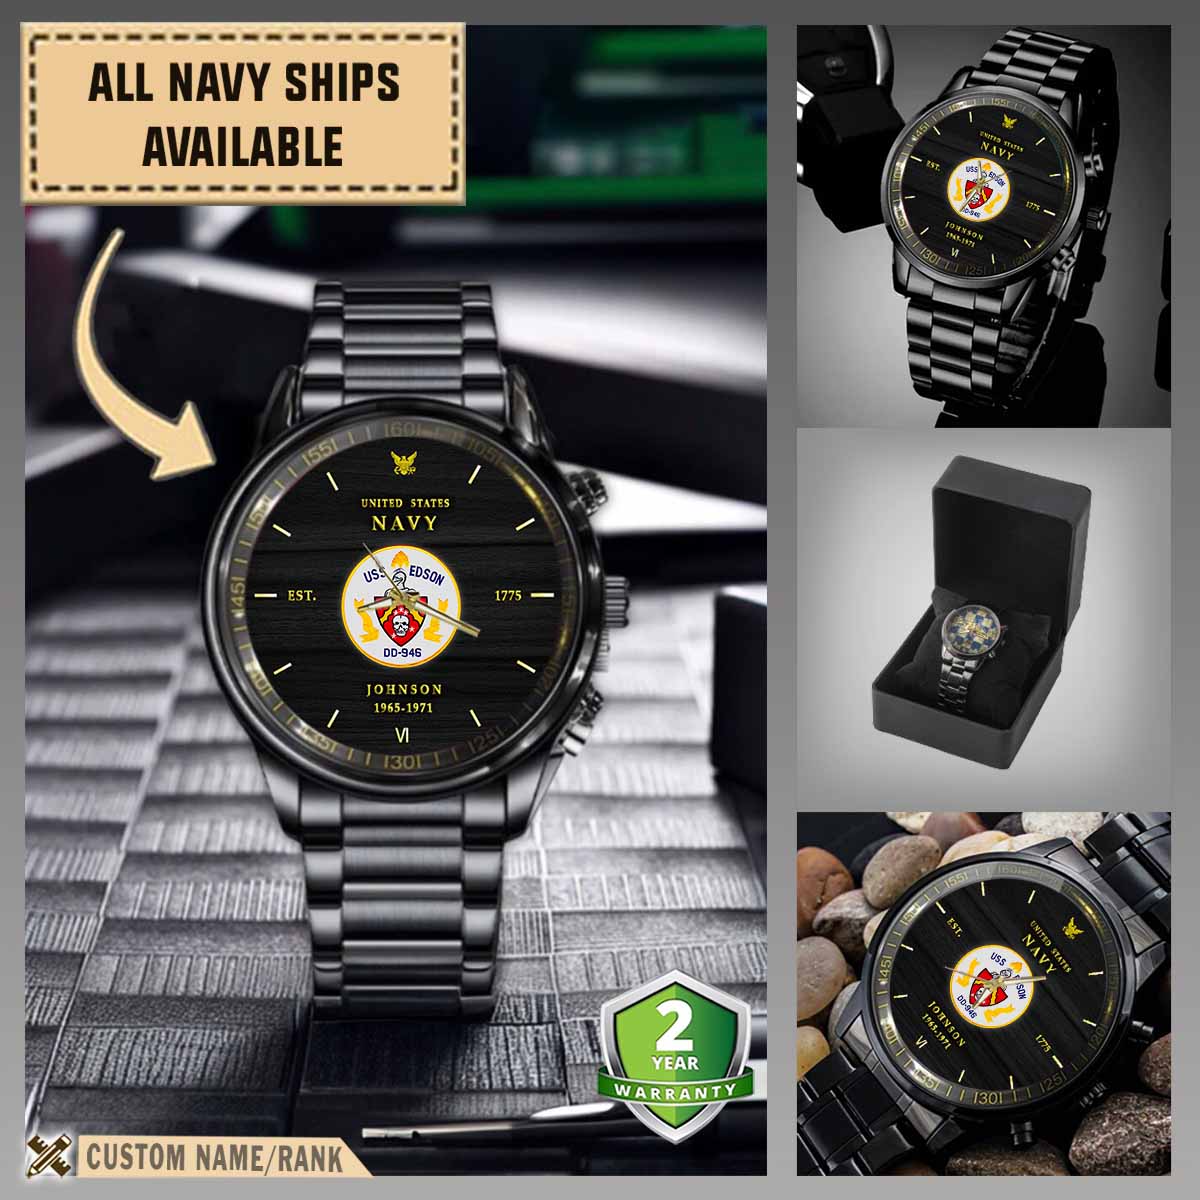 uss edson dd 946military black wrist watch y6eto